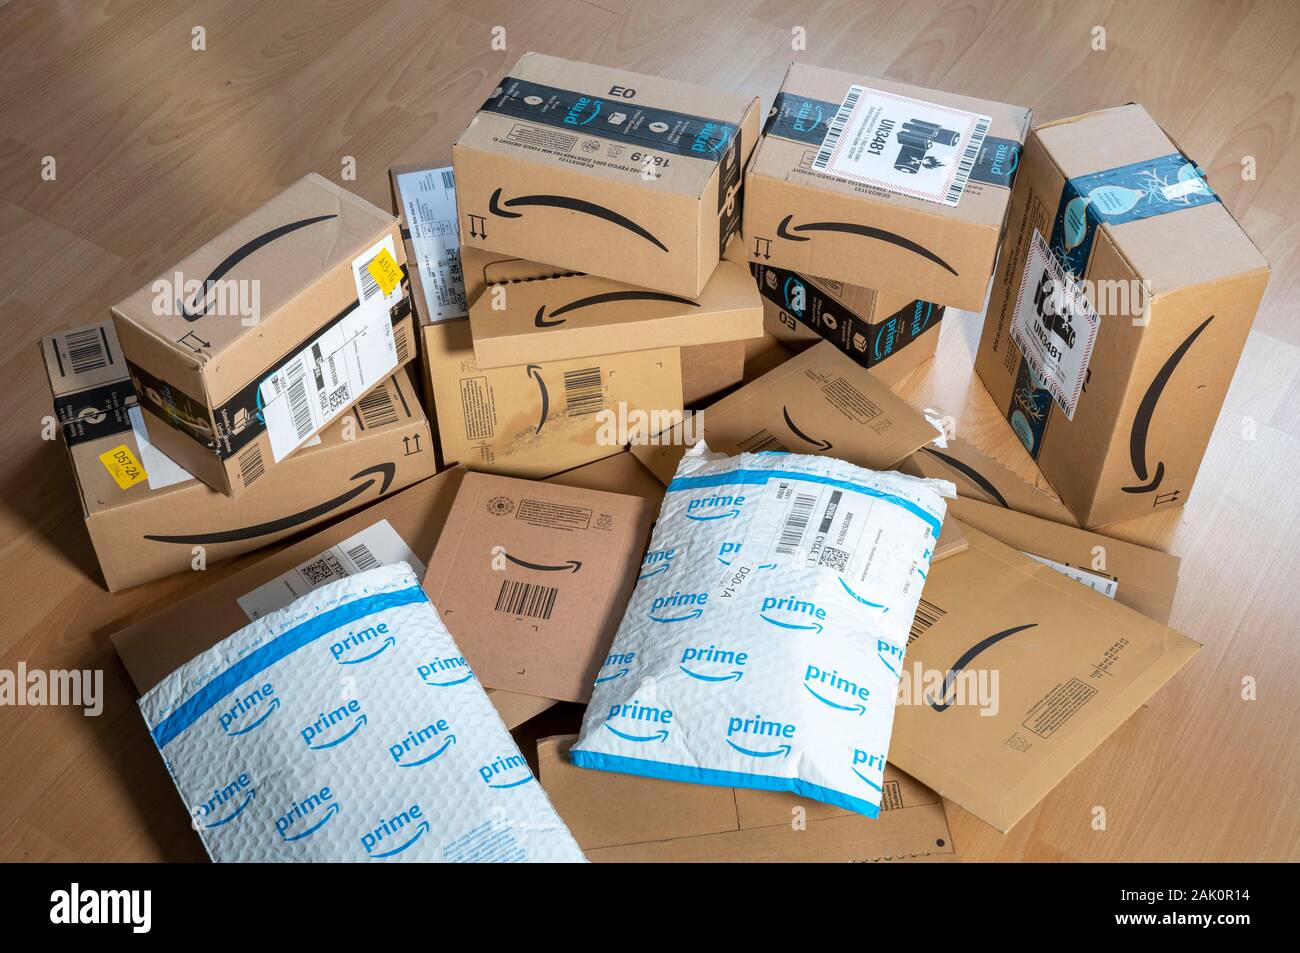 Pacchetti di posta elettronica online ordini società Amazon, imballaggi vari, Amazon, Foto Stock